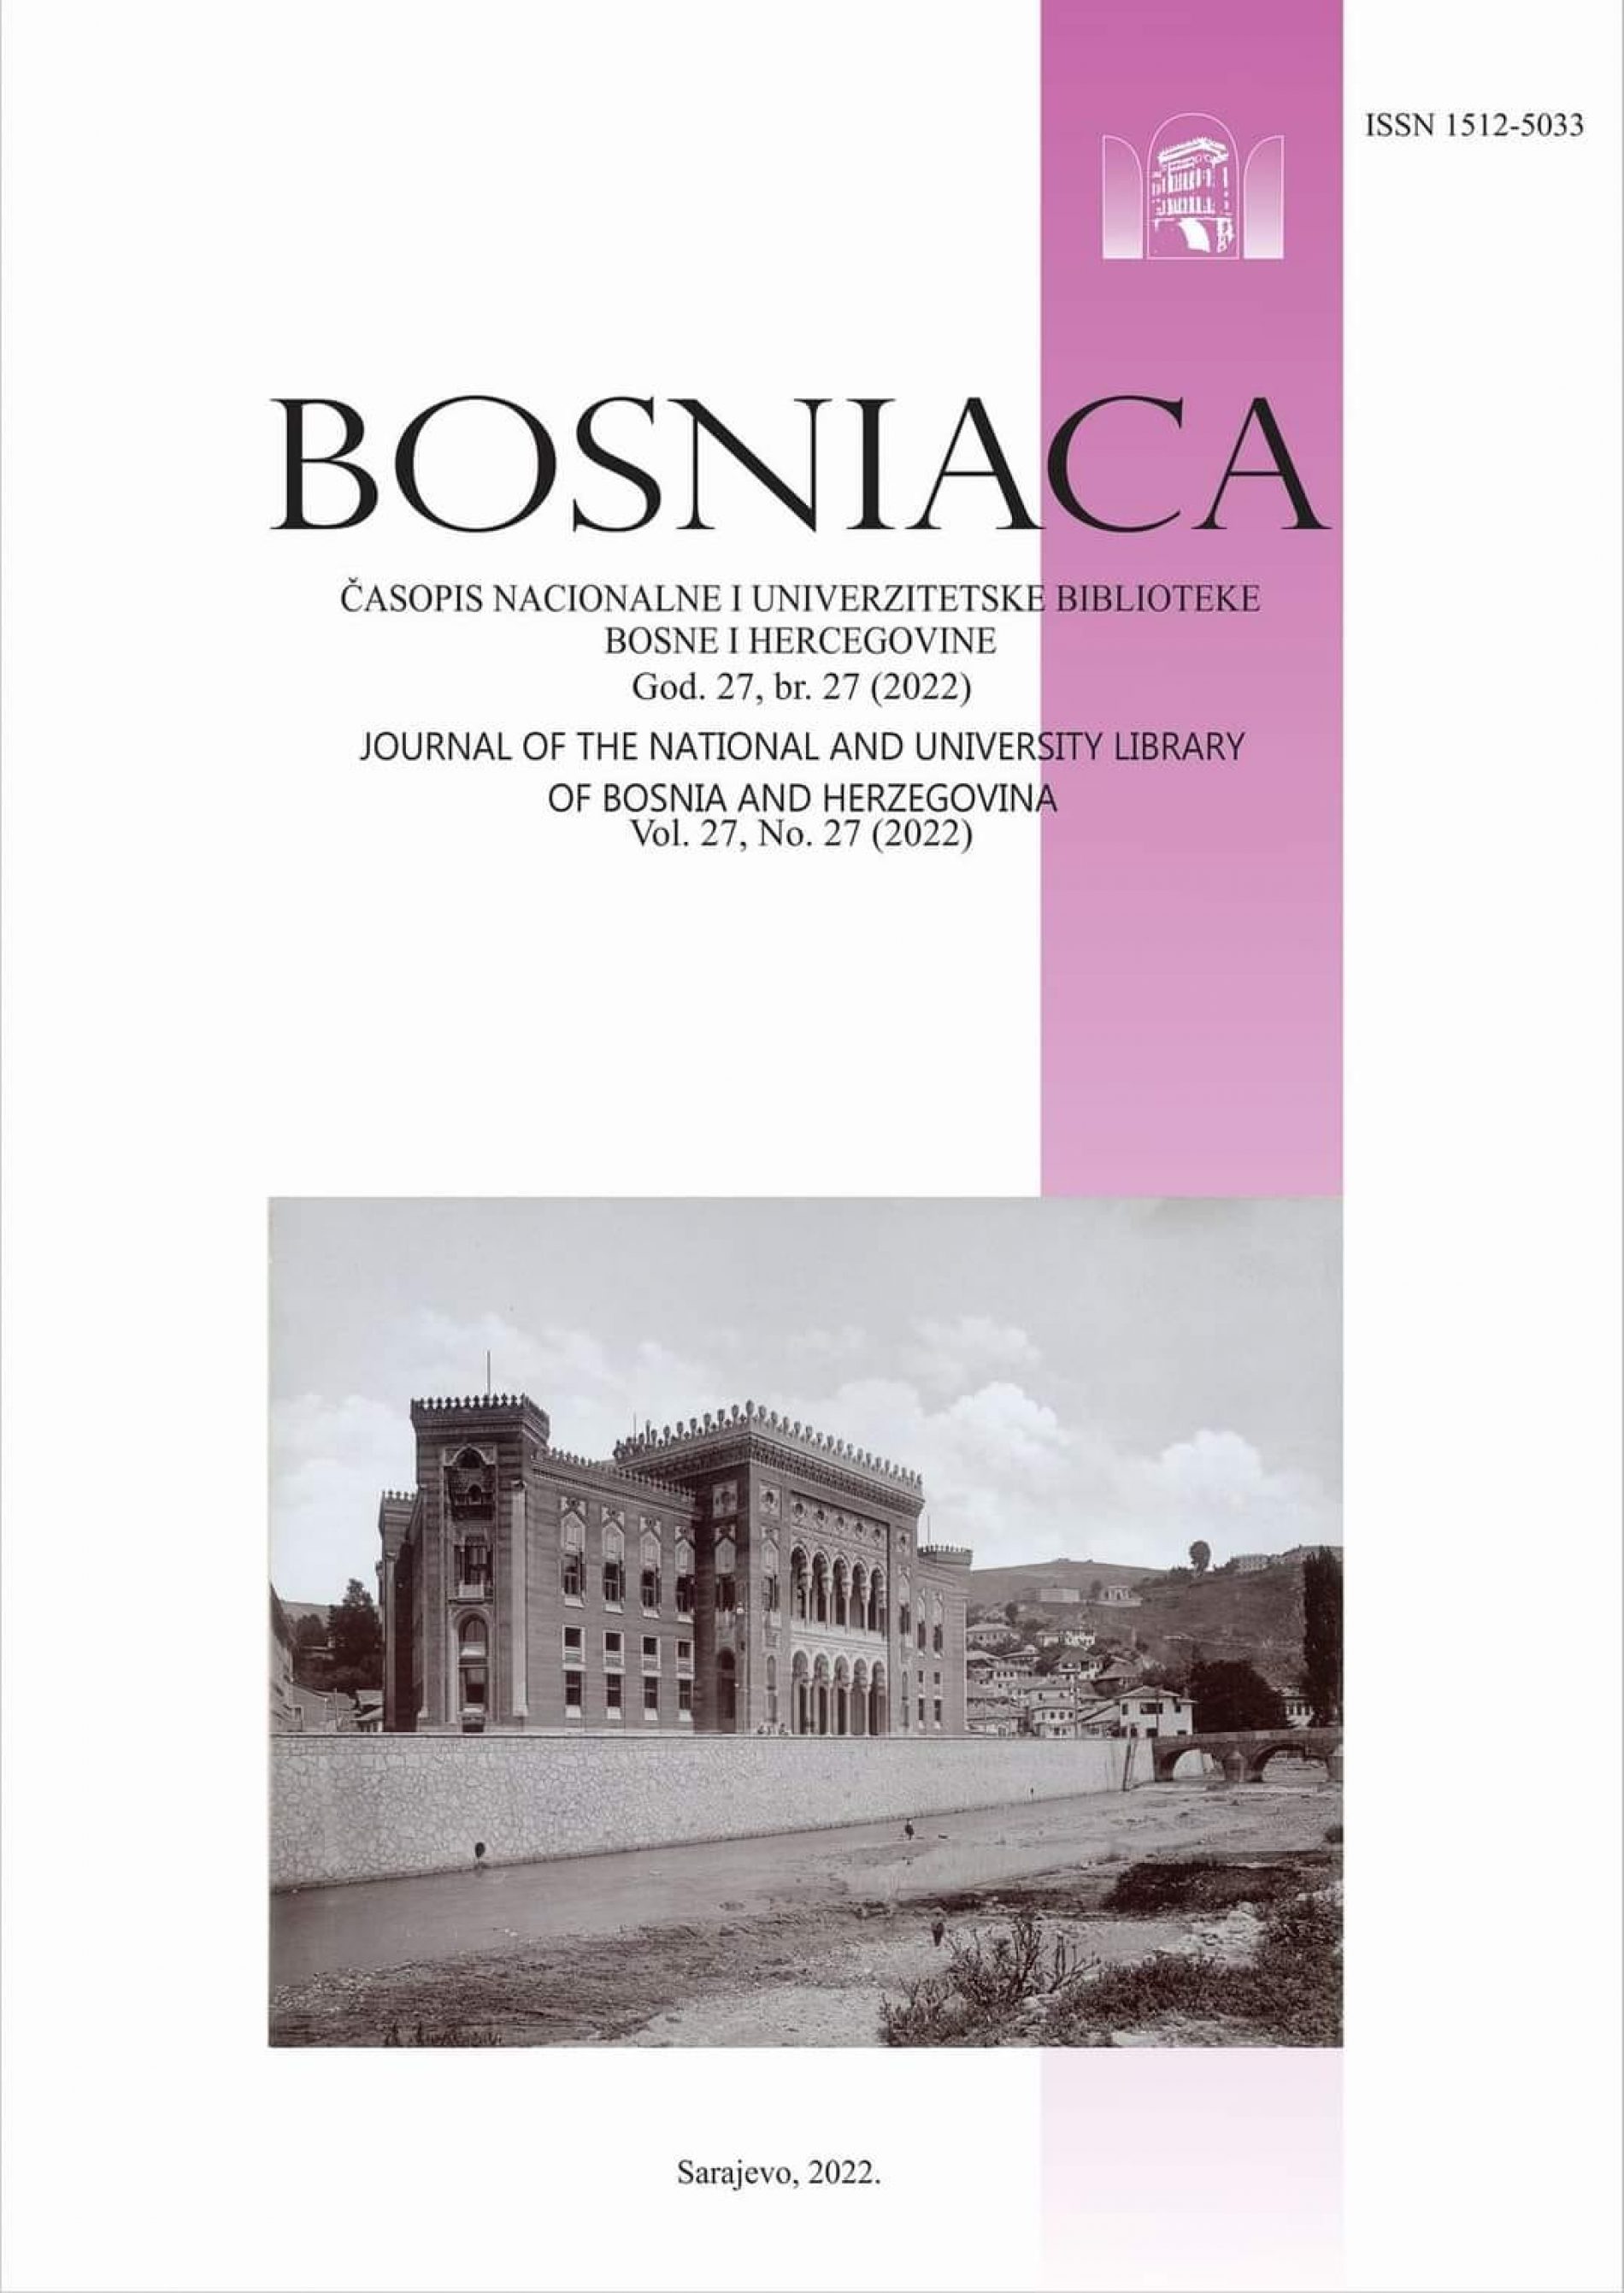 Časopis Bosniaca uvršten u bazu SCOPUS